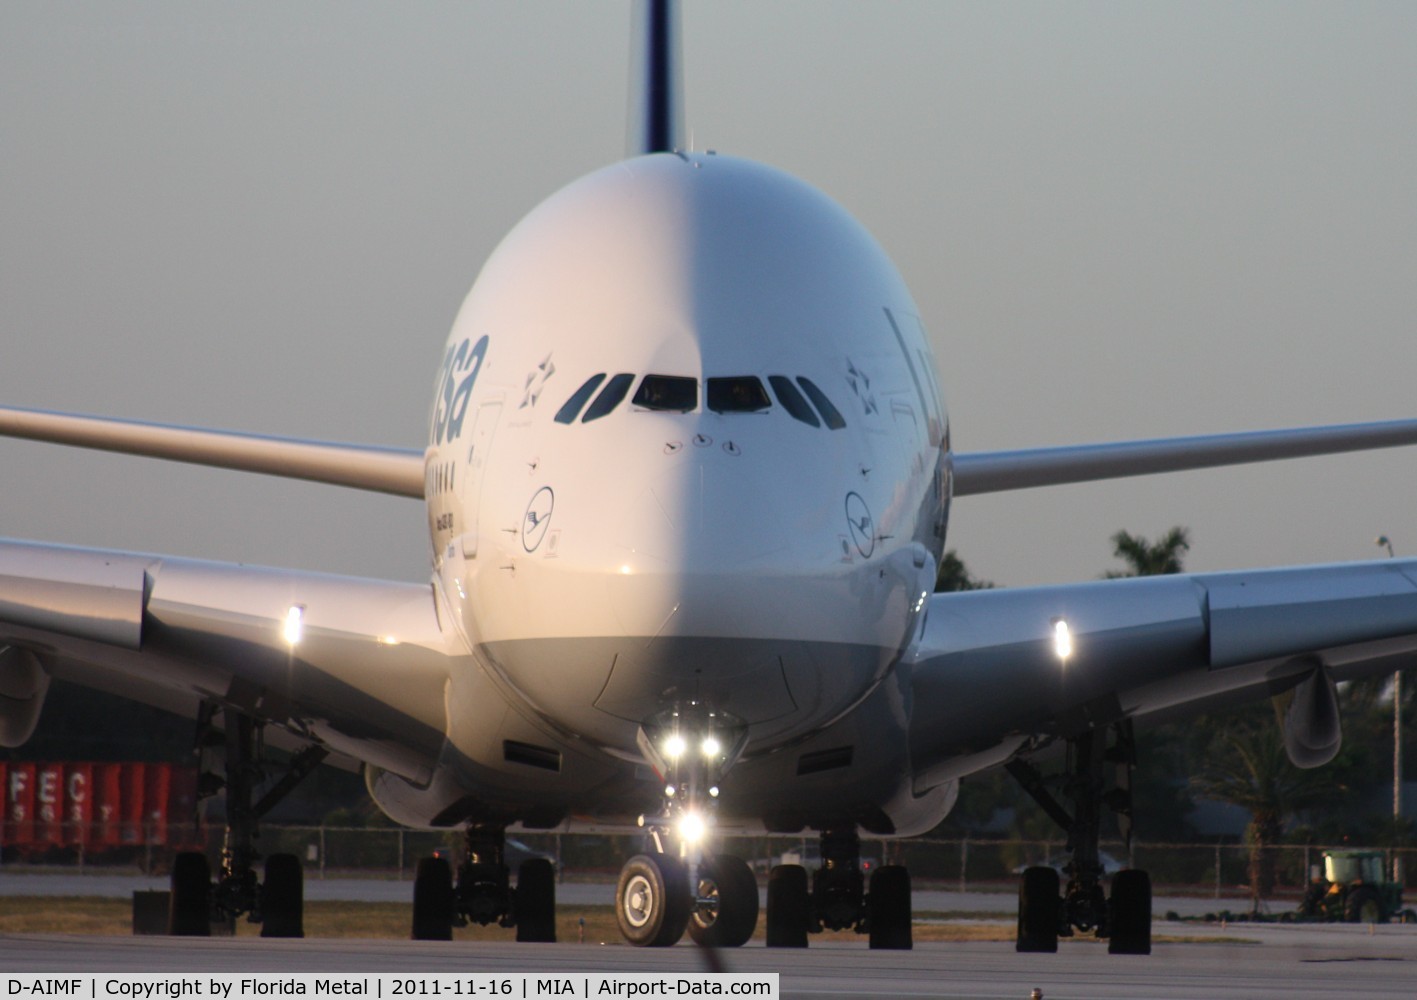 D-AIMF, 2011 Airbus A380-841 C/N 066, Lufthansa A380 head on